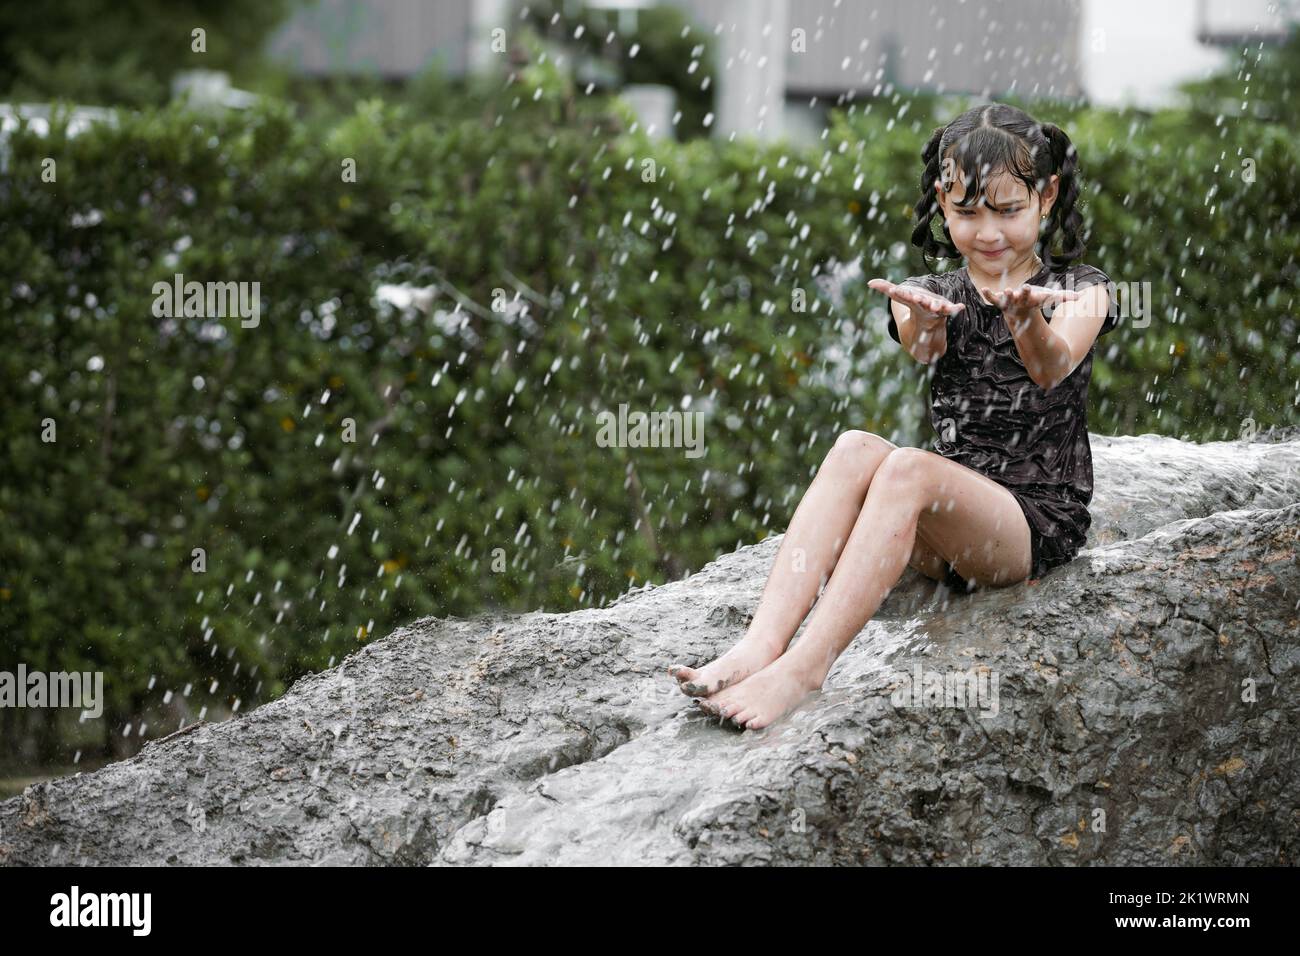 Allegra bambina che gioca su un mucchio di terreno bagnato durante la pioggia nella stagione piovosa. Foto Stock